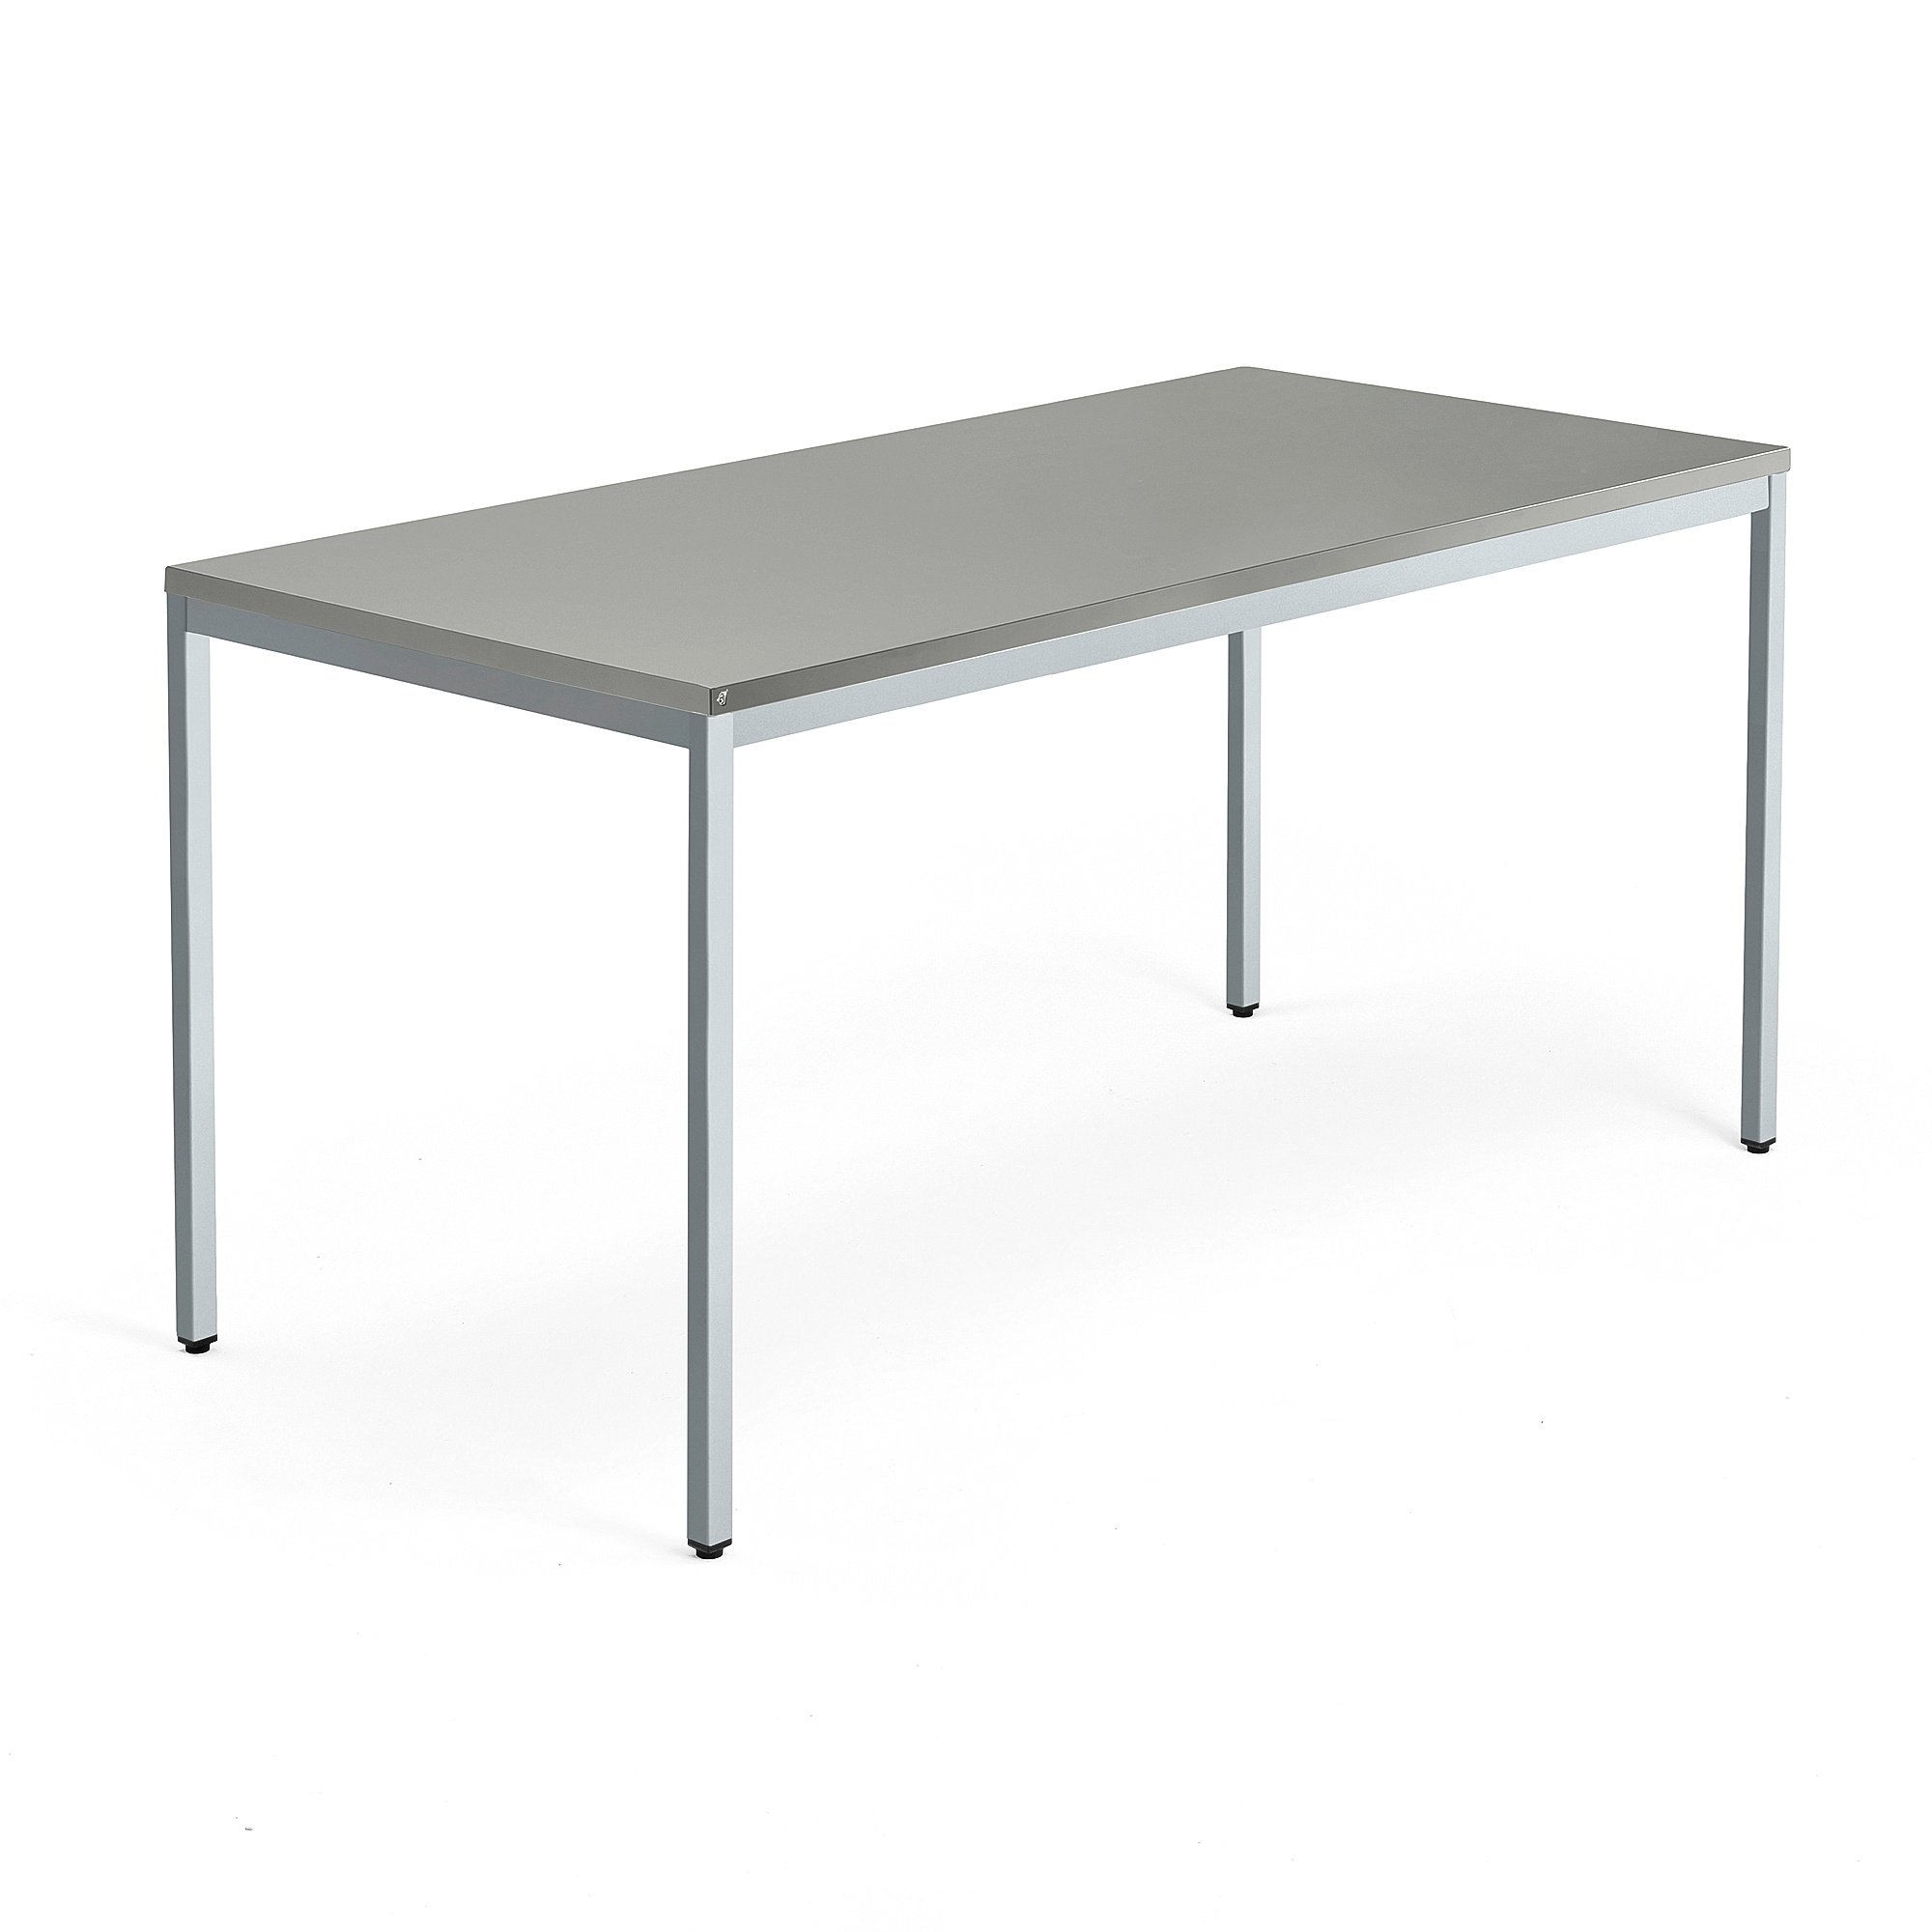 Jednací stůl QBUS, 4 nohy, 1600x800 mm, stříbrný rám, světle šedá